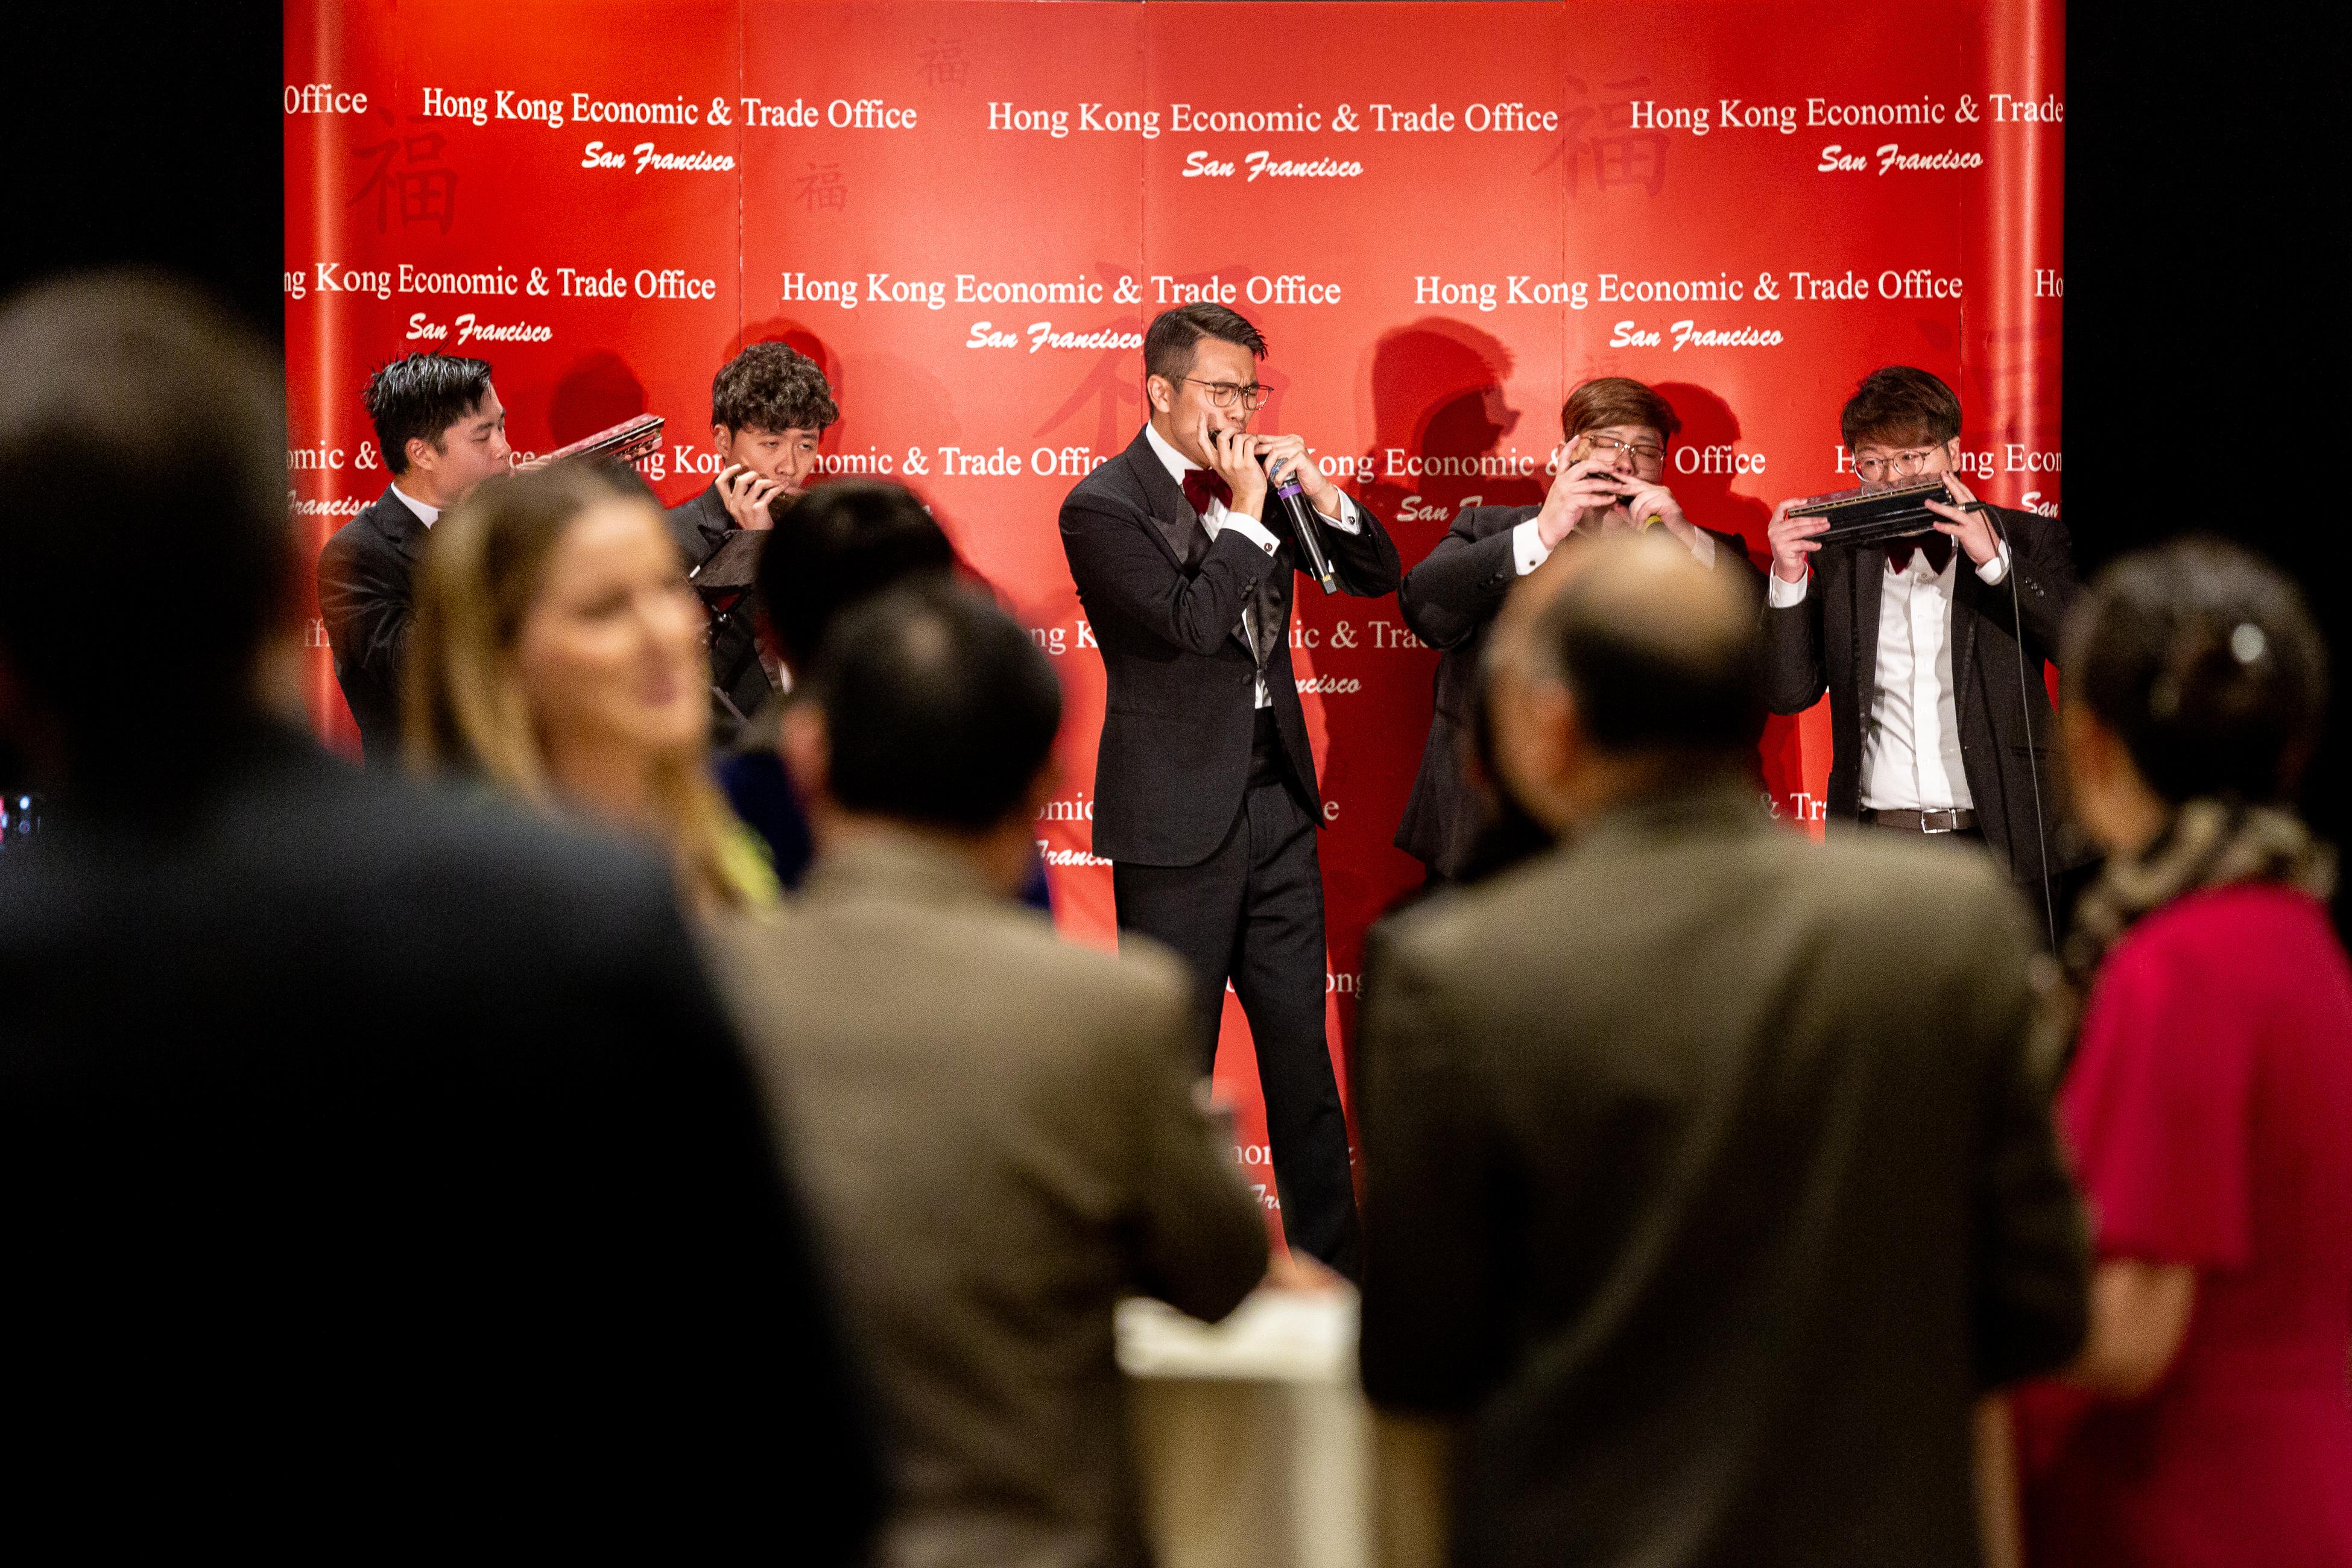 香港驻三藩市经济贸易办事处三月五日（西雅图时间）在华盛顿州西雅图举办新春酒会庆祝龙年。图示香港著名口琴组合RedBricks Harmonica在酒会表演。